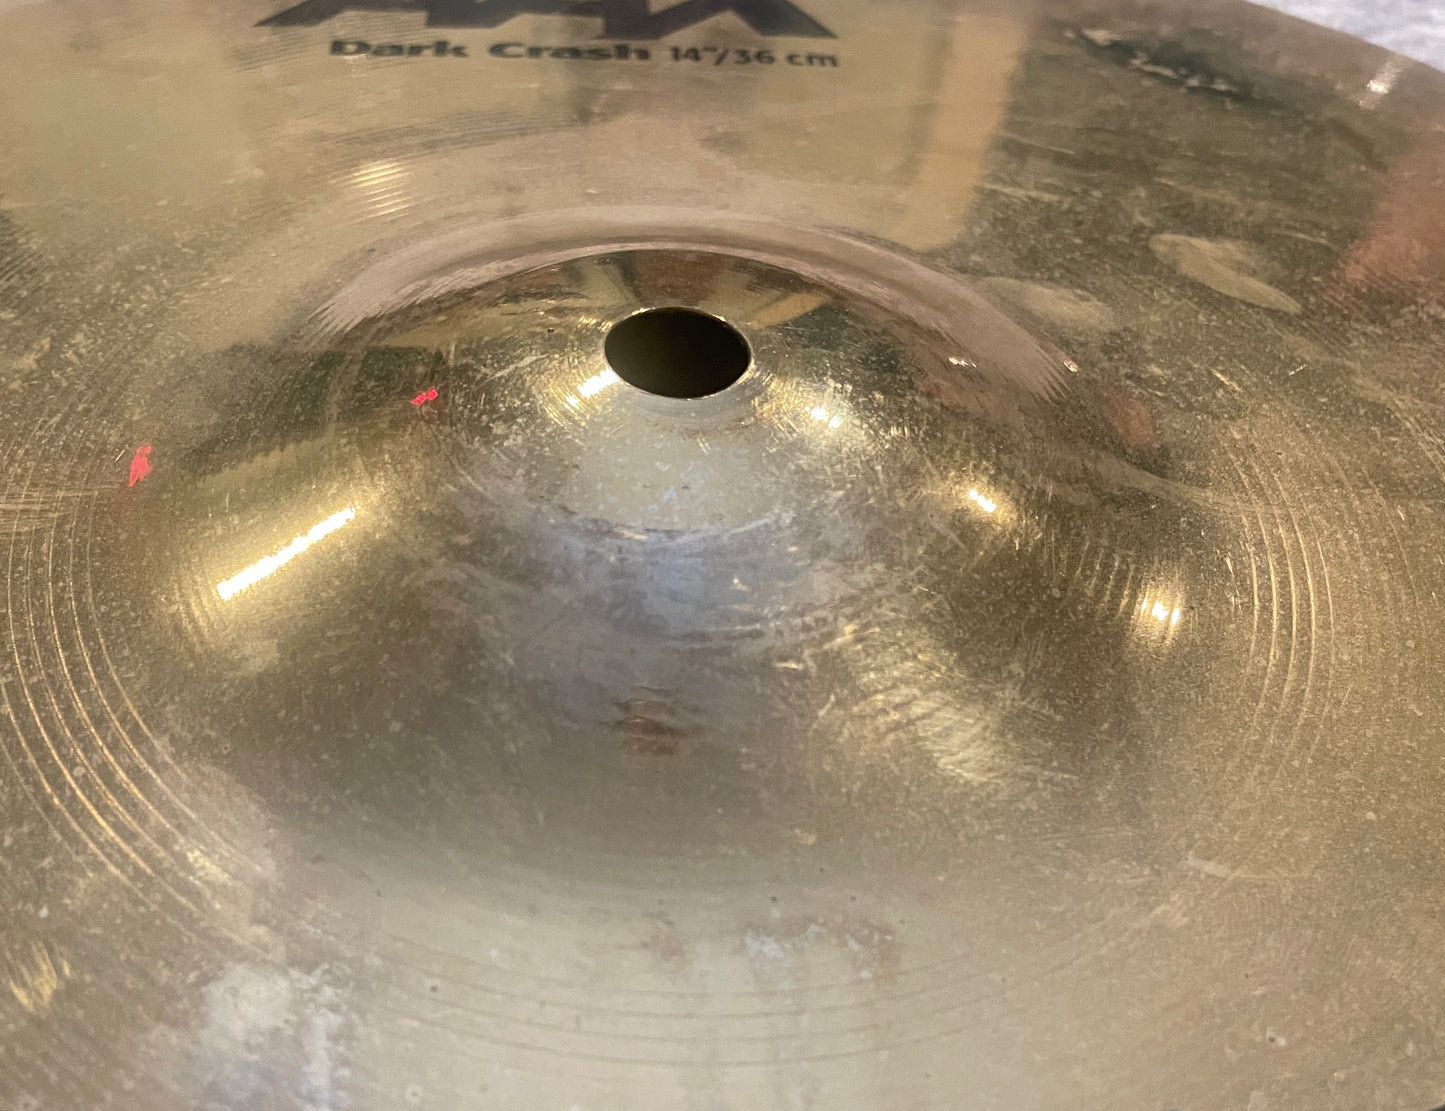 14" Sabian AAX Dark Crash Cymbal 710g